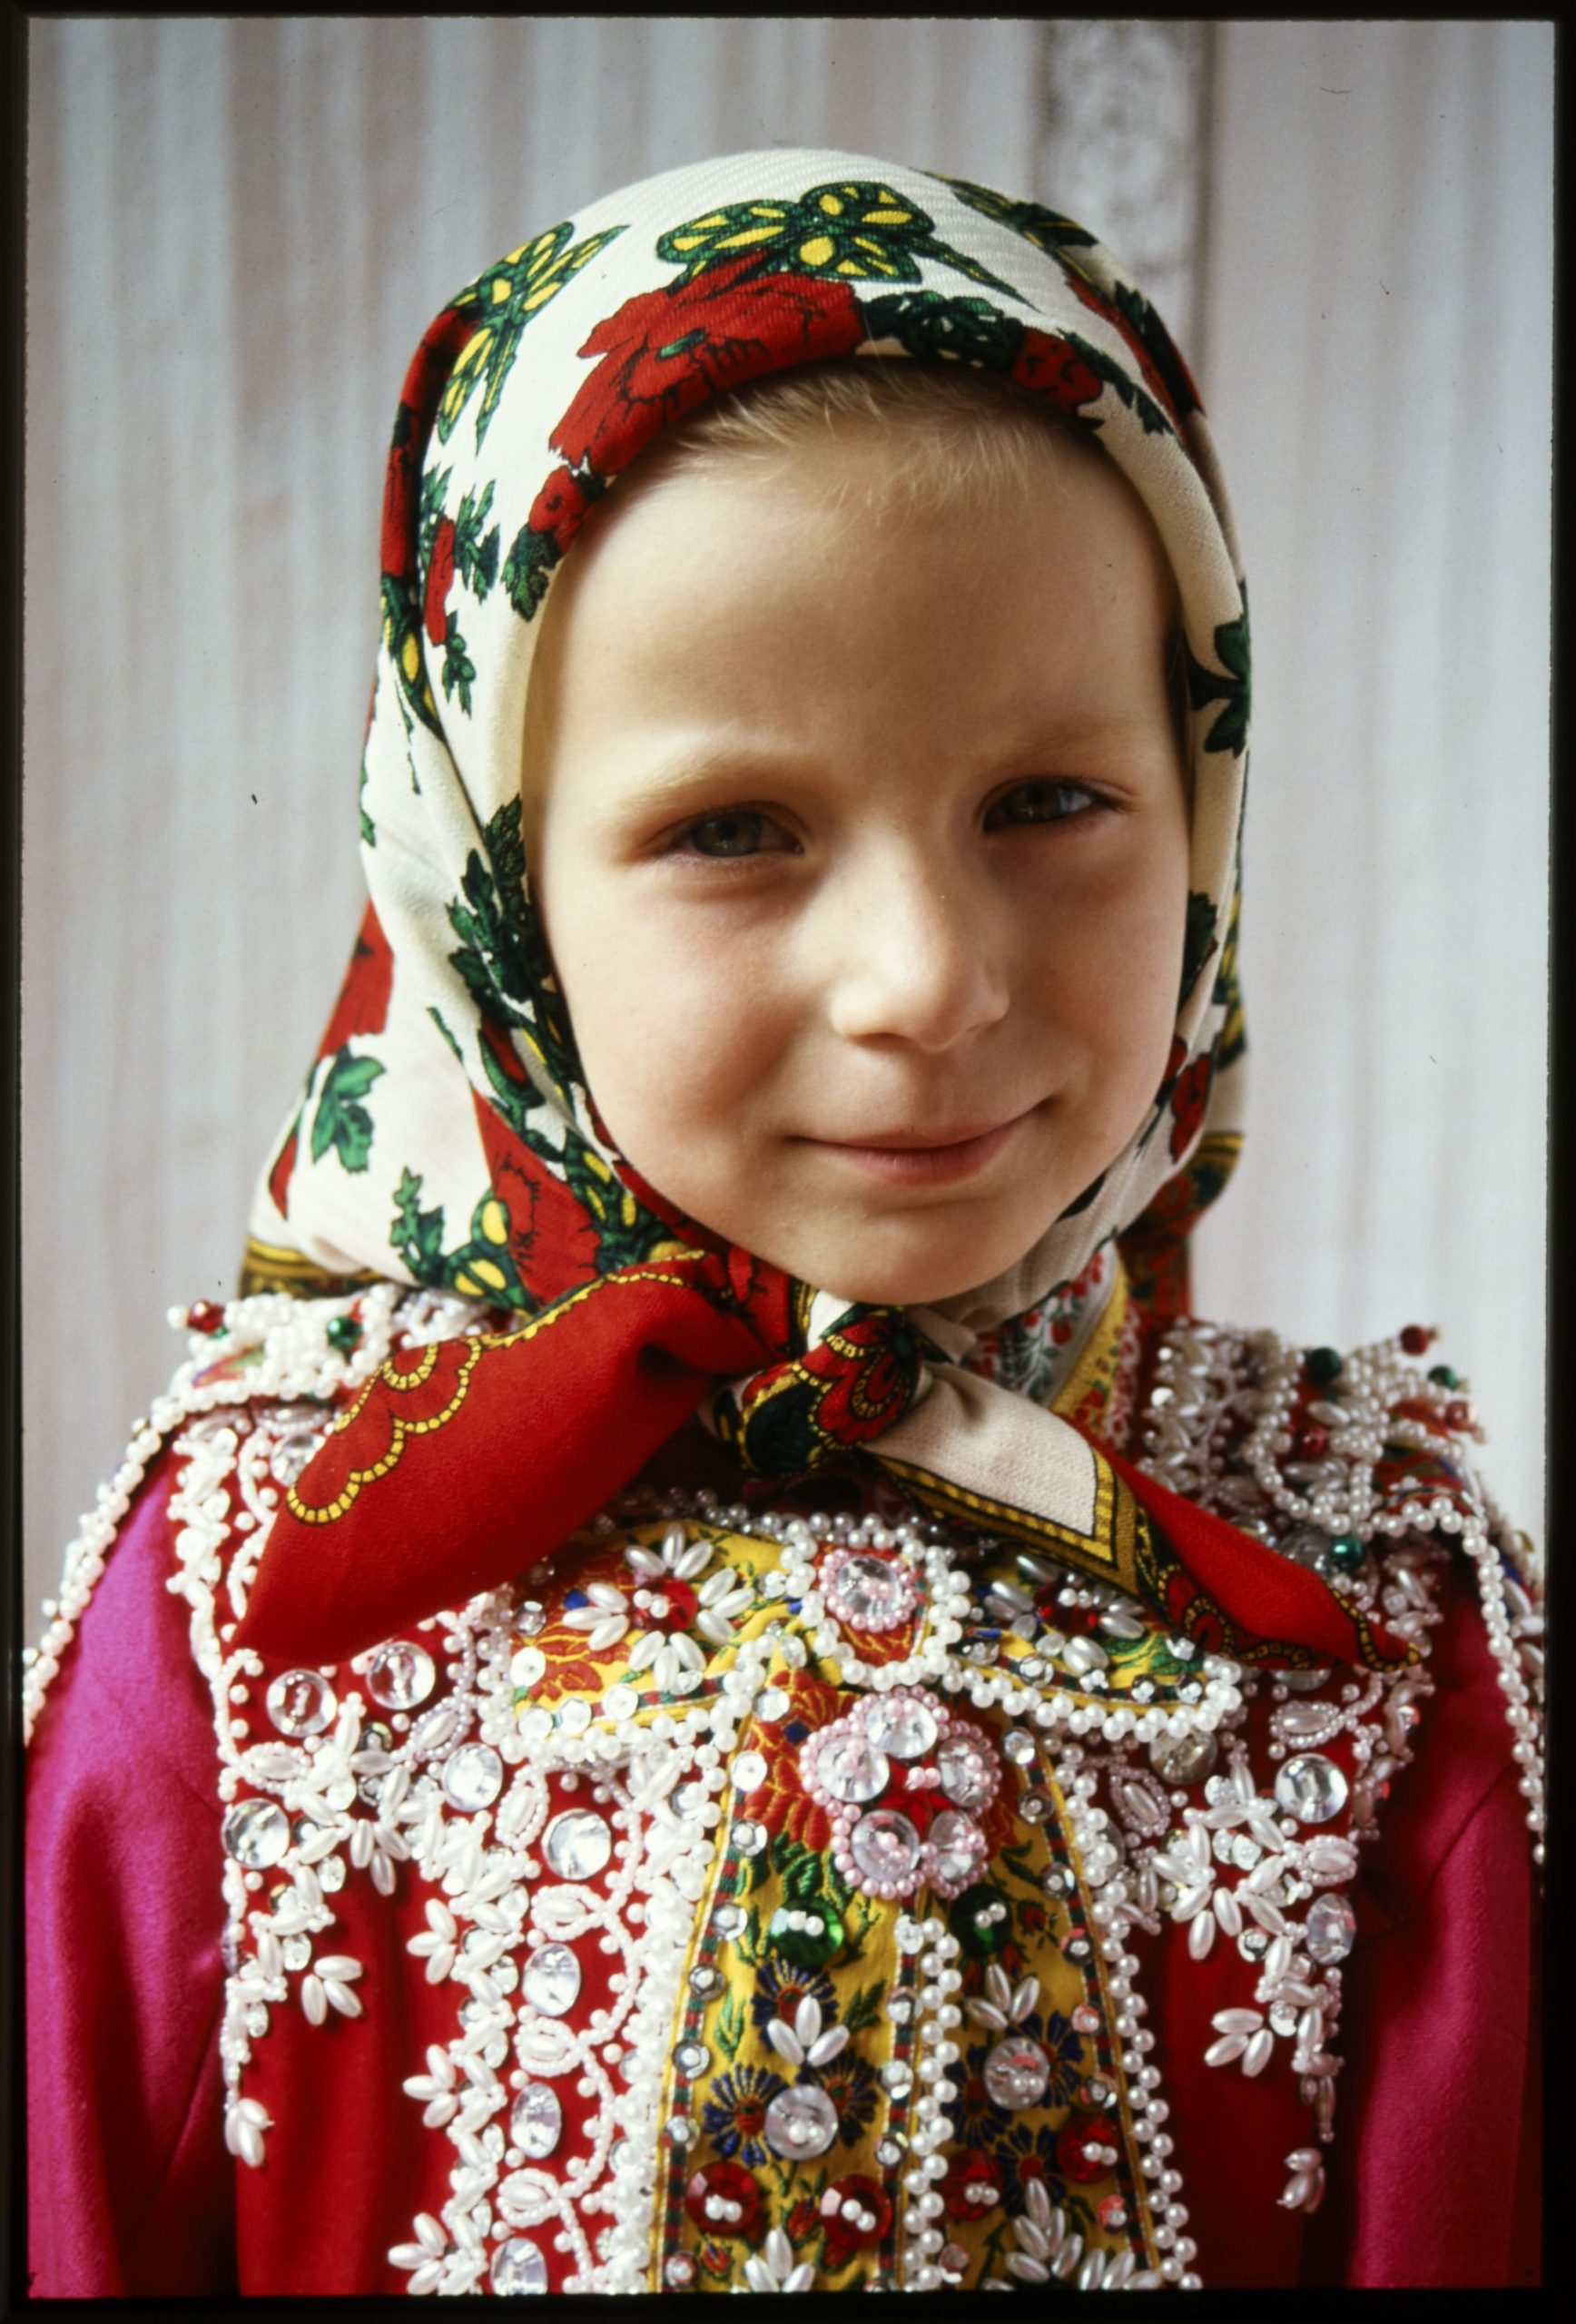 D34700 Kislány félünnepi kendőben, Inaktelke, Kolozs (Cluj) megye, Románia. Winter Erzsébet felvétele